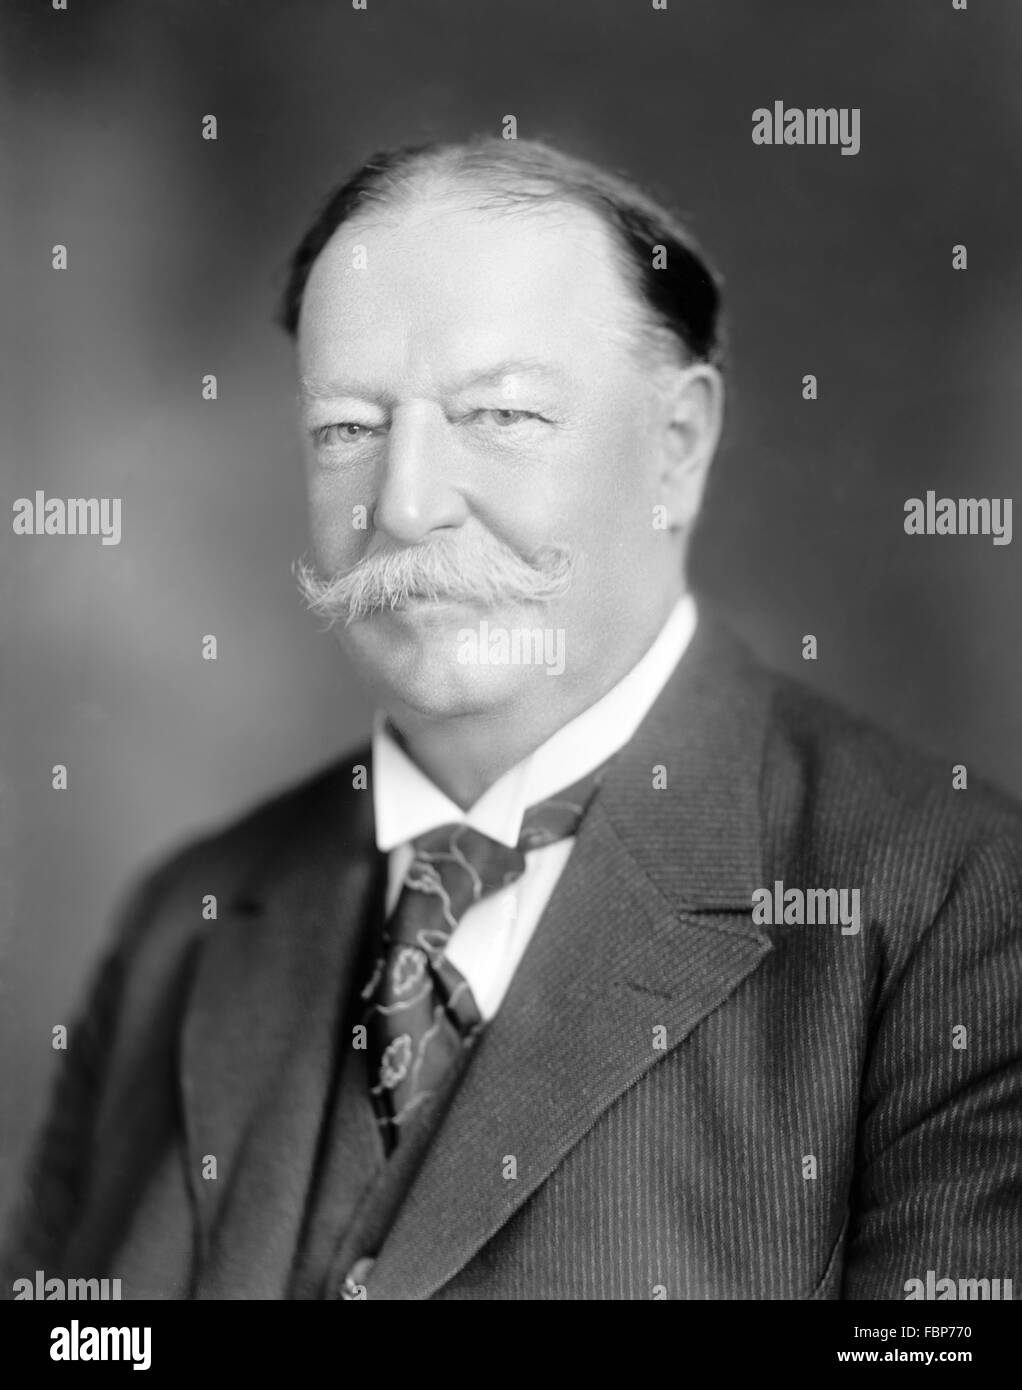 William Howard Taft, le portrait du 27e Président des Etats-Unis, prises entre 1909 et 1930 Banque D'Images